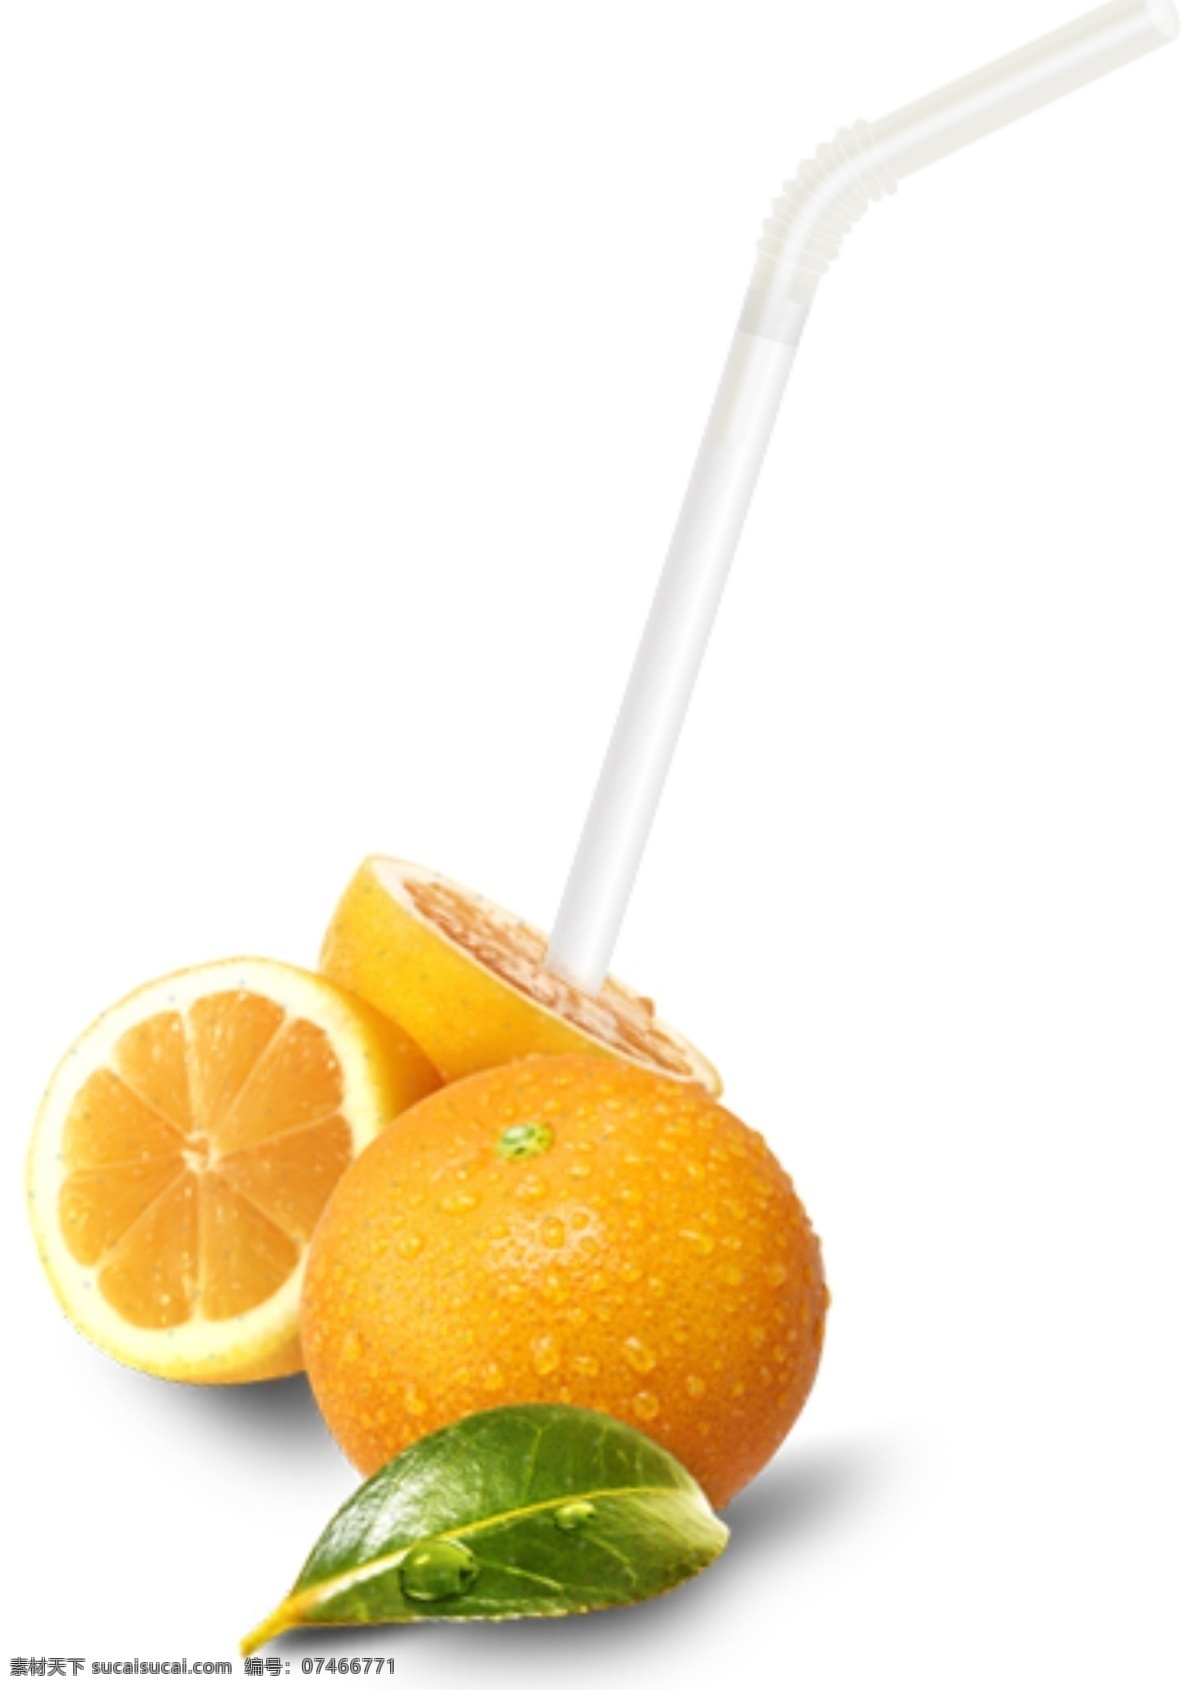 水果创意元素 水果 吸管 橙子 创意水果元素 白色